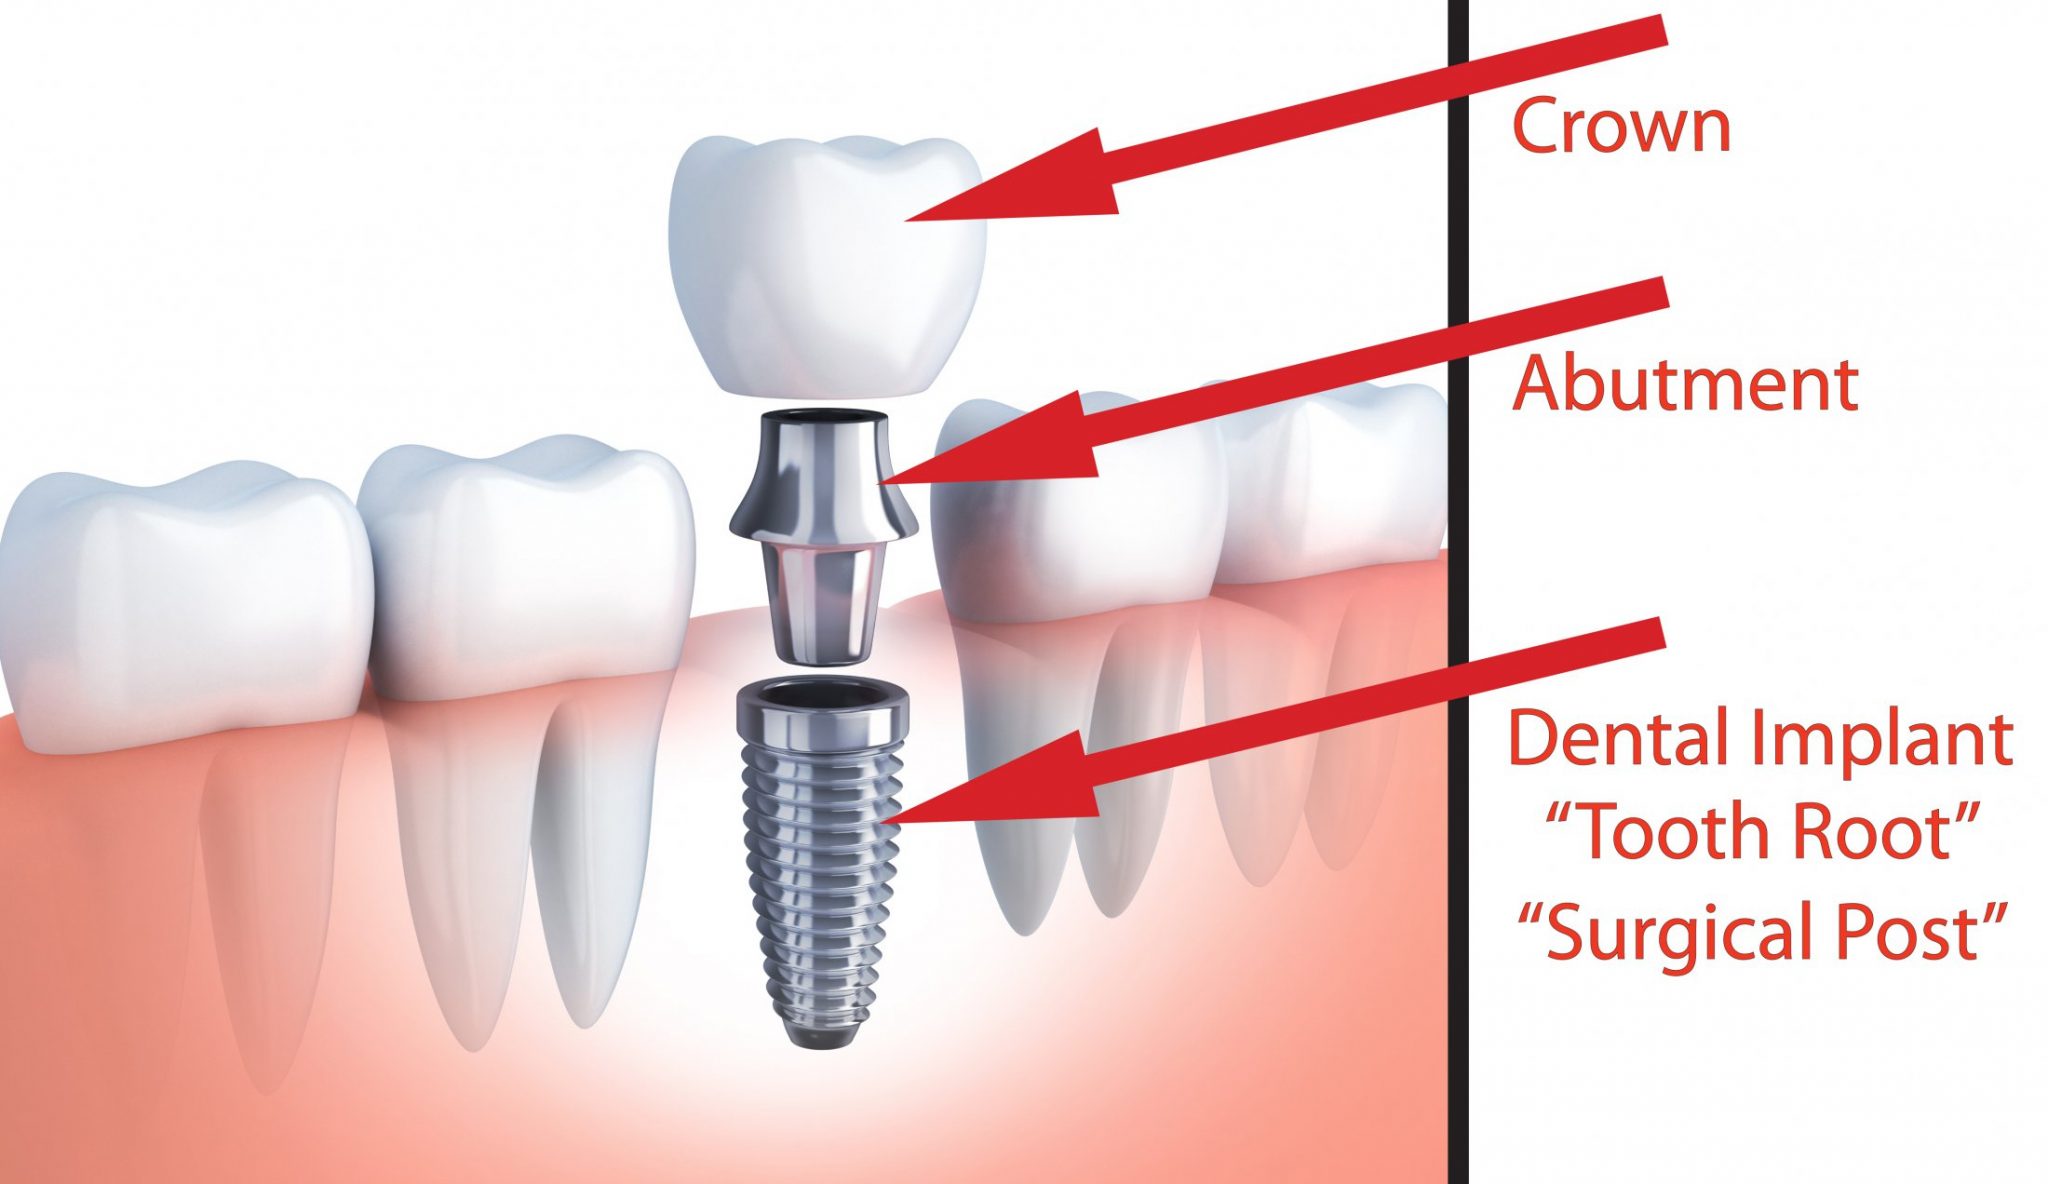 Dental Implant skye dental services